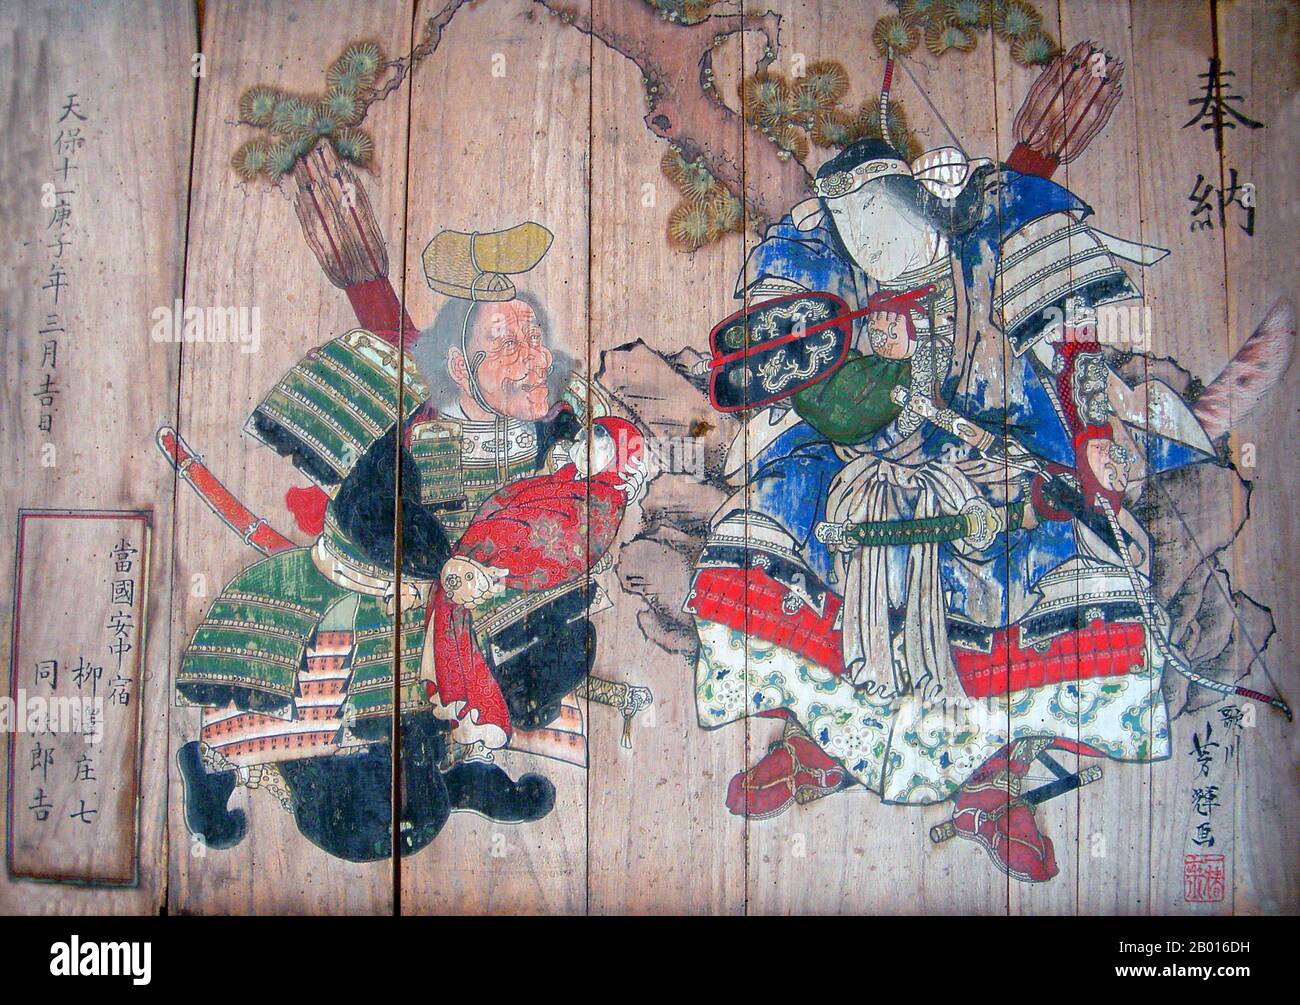 Giappone: Imperatrice Jingu (c.. 169-269 d.C.) essendo mostrato suo figlio, il futuro imperatore Ojin. Pittura su tavole di legno di Utagawa Yoshiteru (1809-1891), 1840. L'imperatrice Jingū (Jingū tennō), nota anche come imperatrice-consorte Jingū, era una leggendaria imperatrice giapponese. L'imperatrice o consorte dell'imperatore Chūai, servì anche come reggente dal momento della morte del marito nel 209 fino all'adesione del figlio imperatore Ōjin al trono nel 269. Fino al periodo Meiji, Jingū fu considerato il XV sovrano imperiale giapponese, secondo il tradizionale ordine di successione. Foto Stock